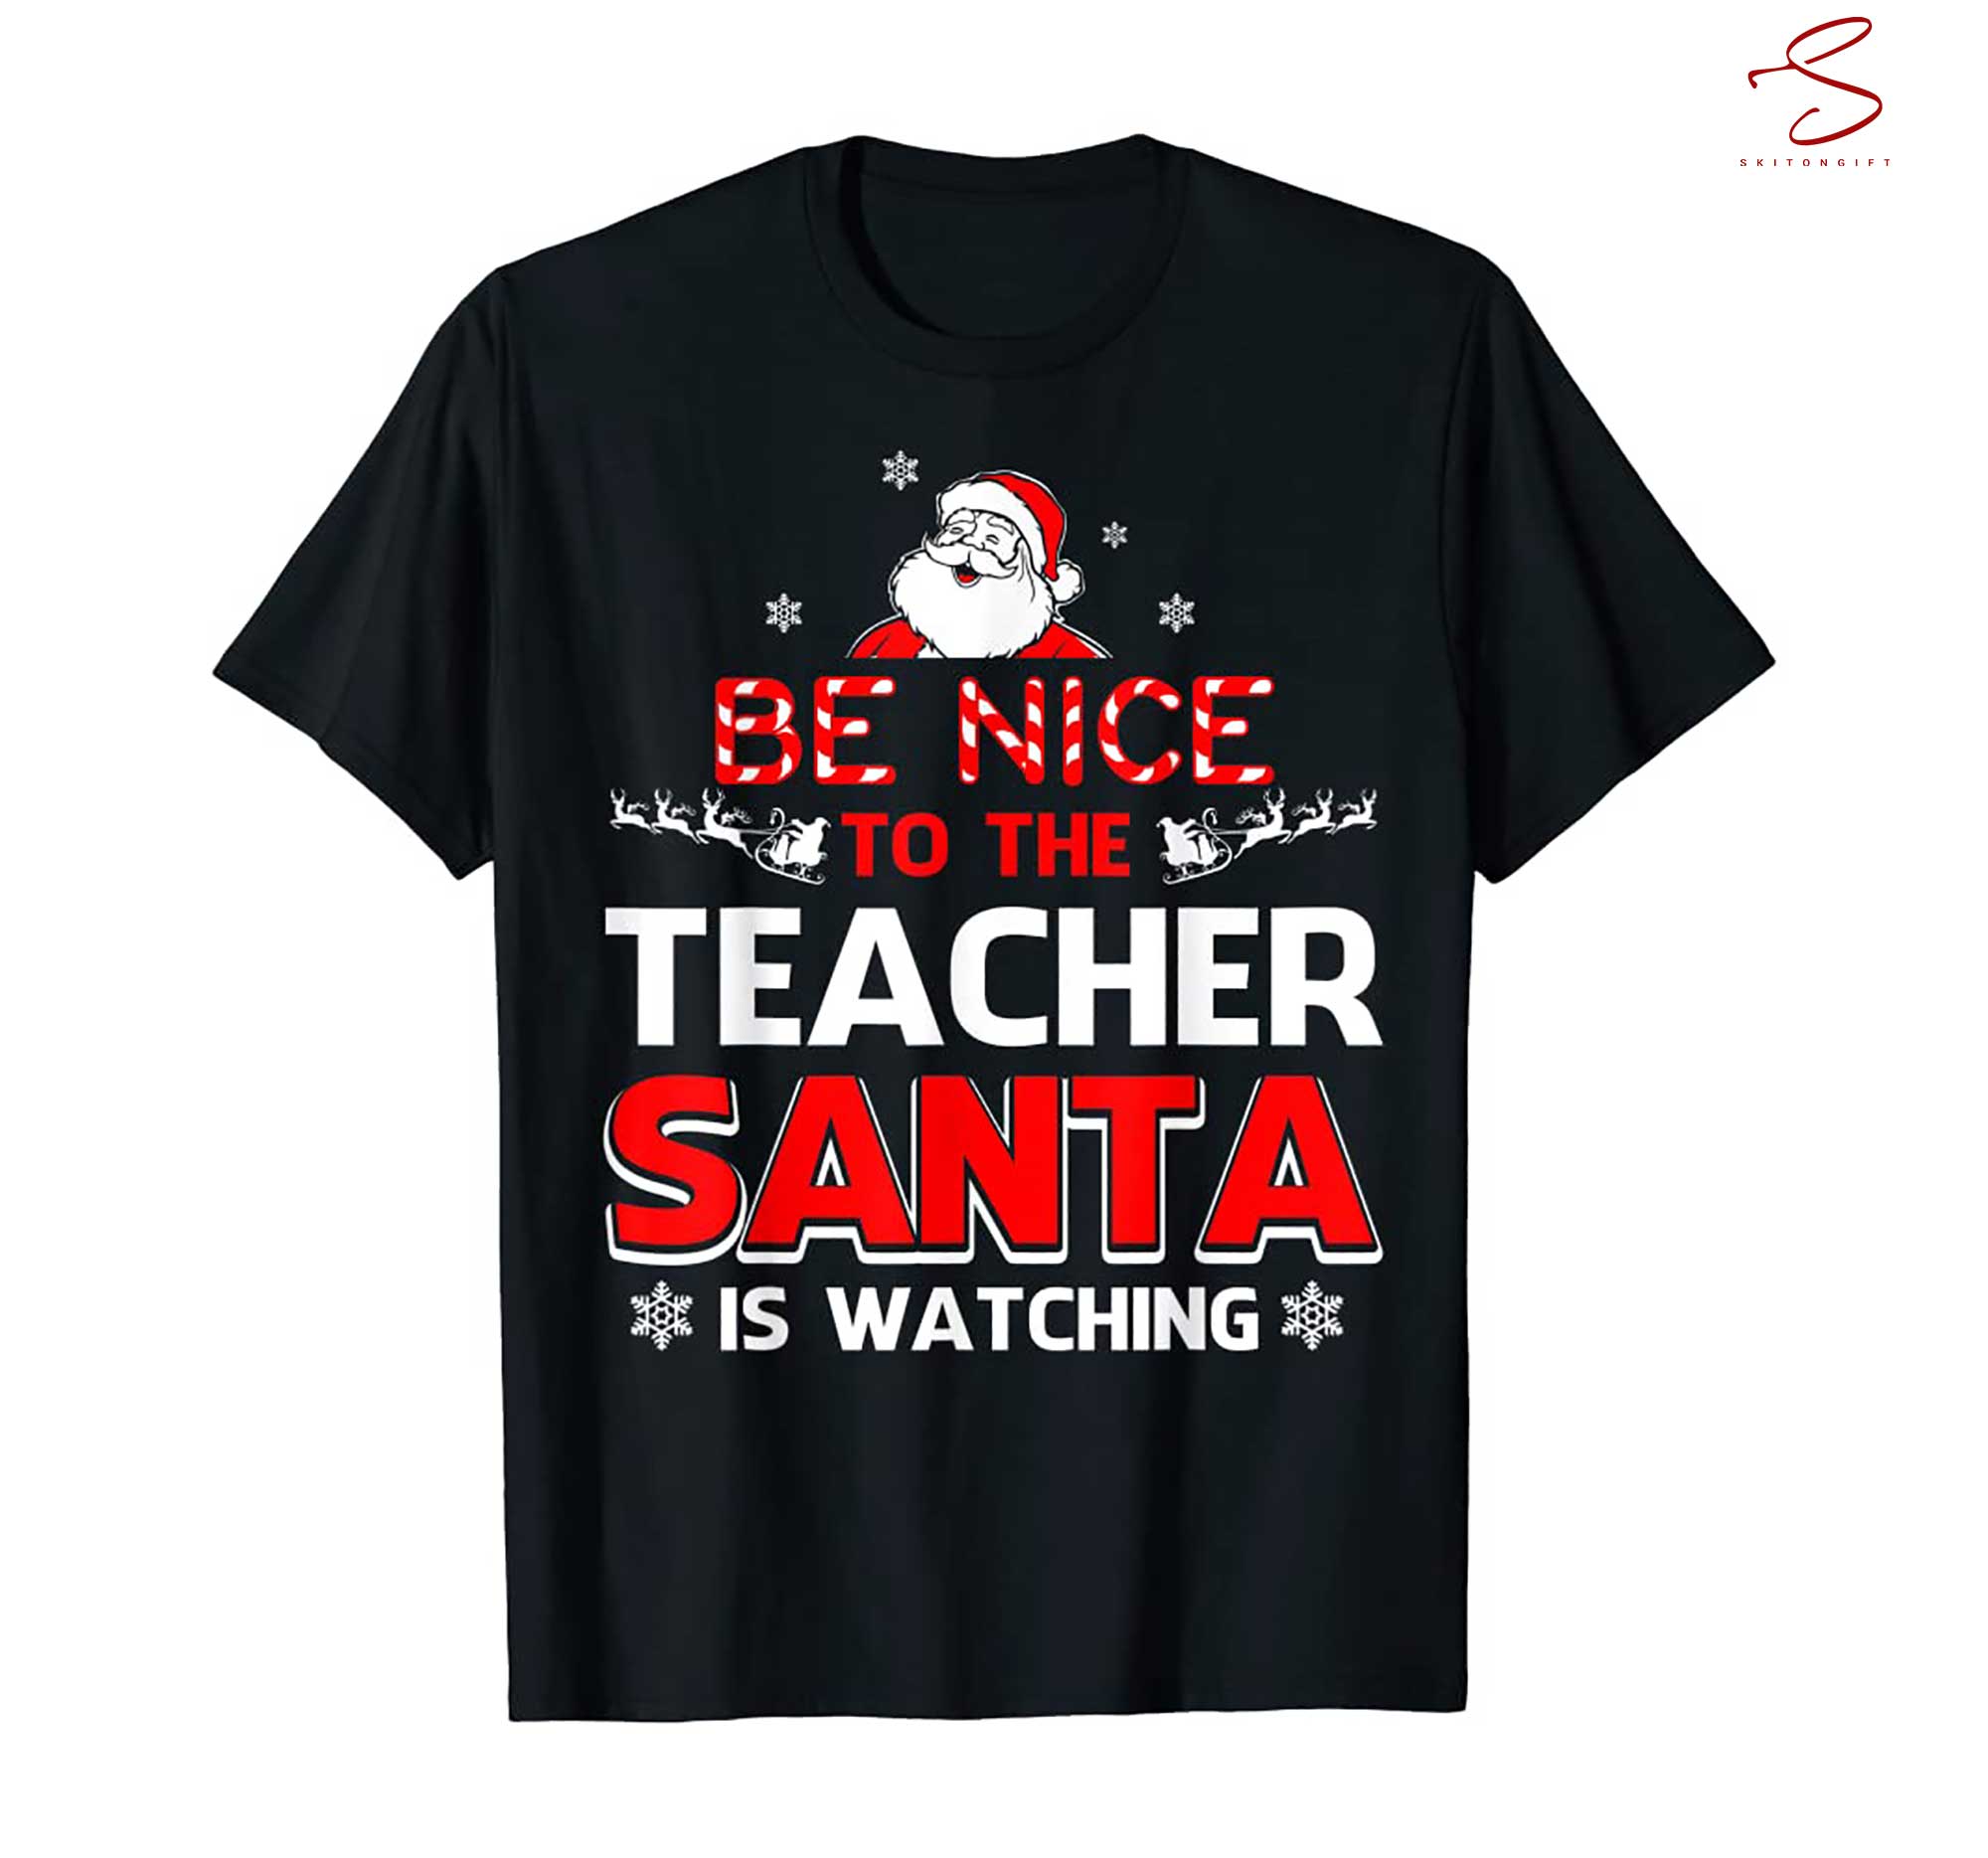 Skitongift Be Nice To The Teacher Santa Is Watching Shirt